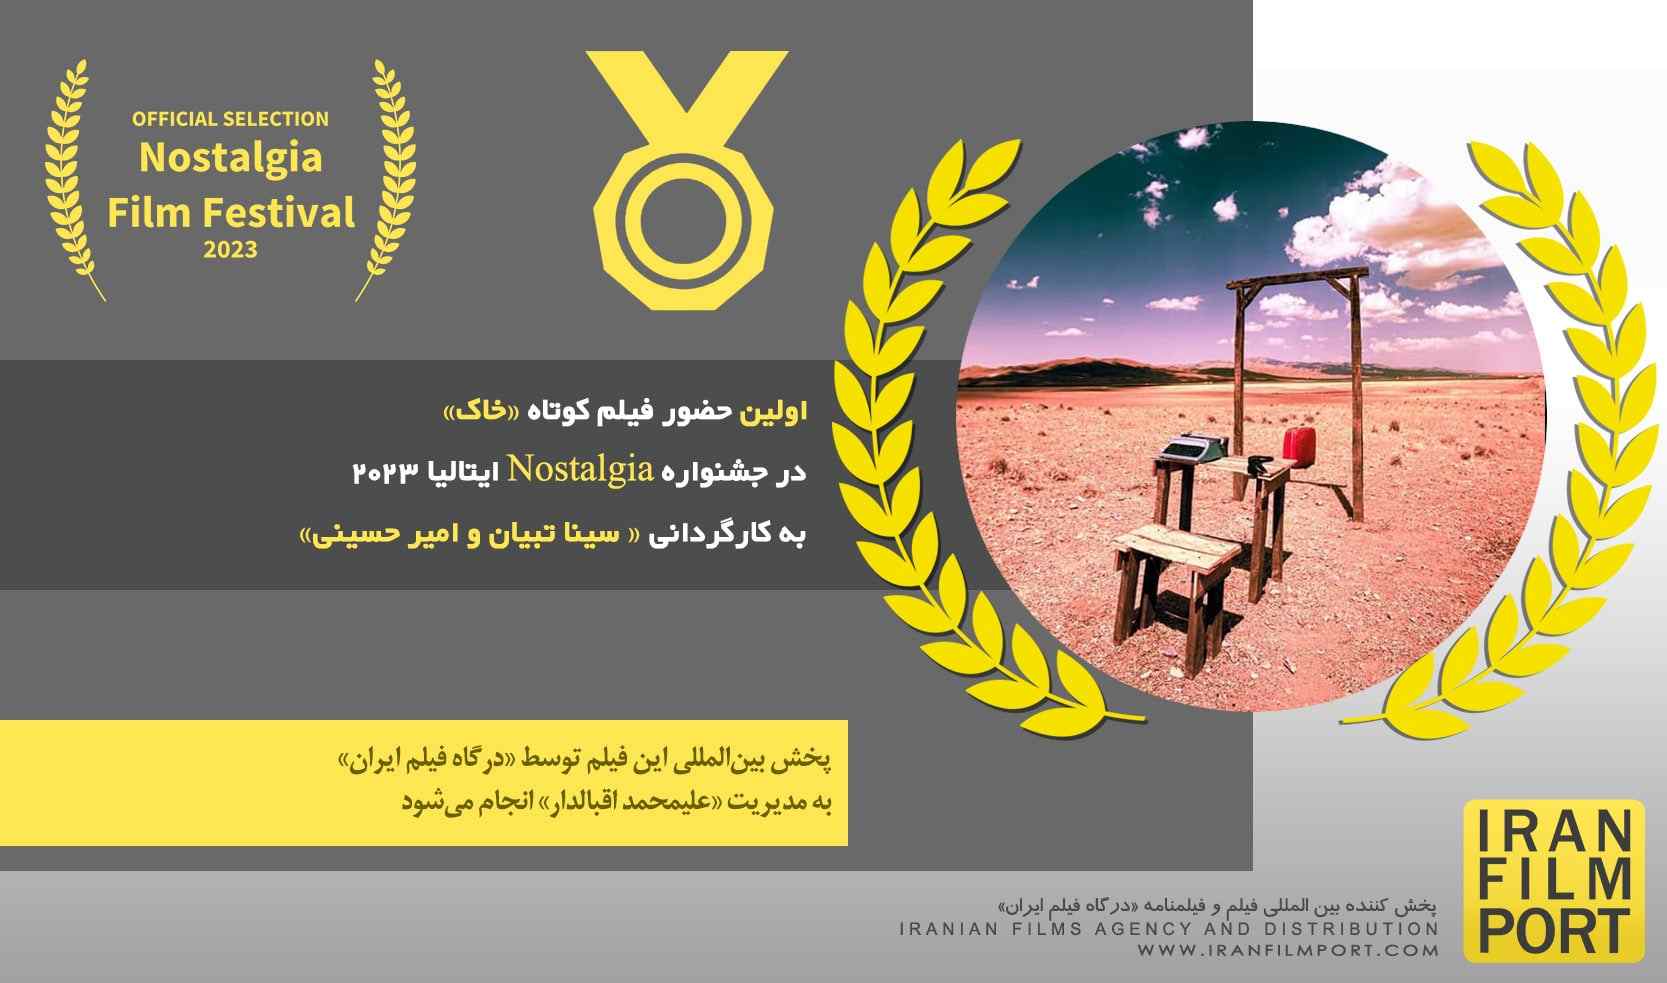 اولین حضور فیلم کوتاه «خاک» به کارگردانی سینا تبیان و امیر حسینی در جشنواره Nostalgia ایتالیا